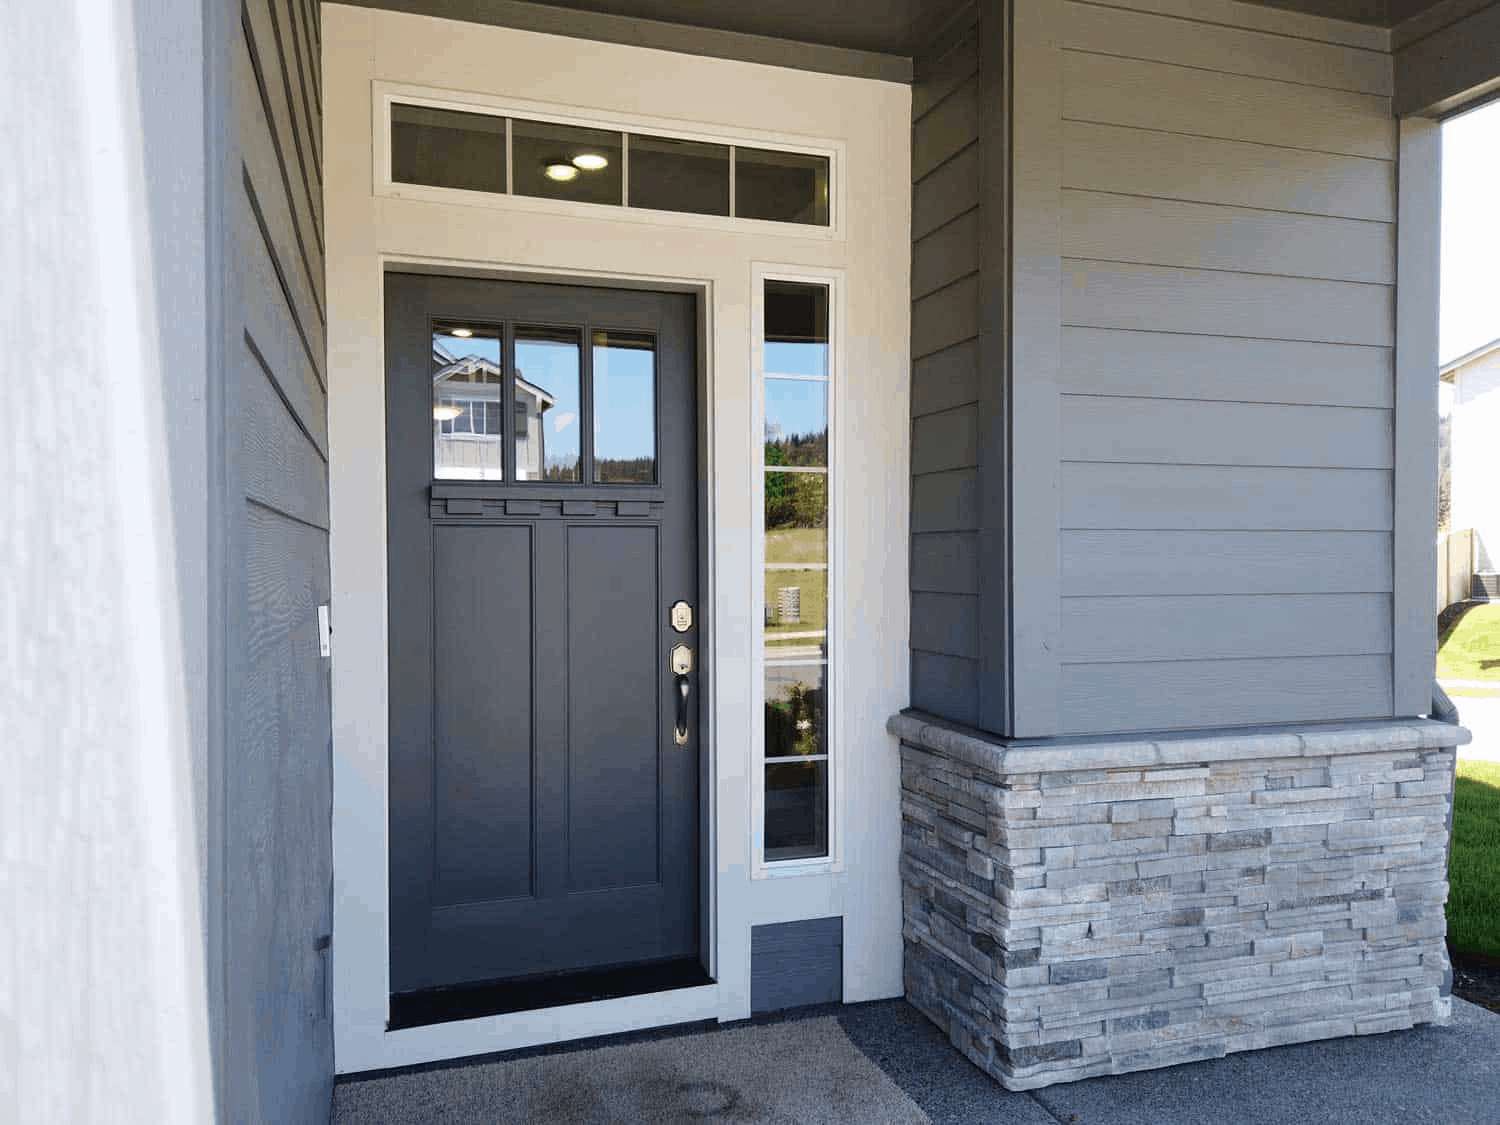 How to Choose Front Door Hardware - Quality Overhead Door